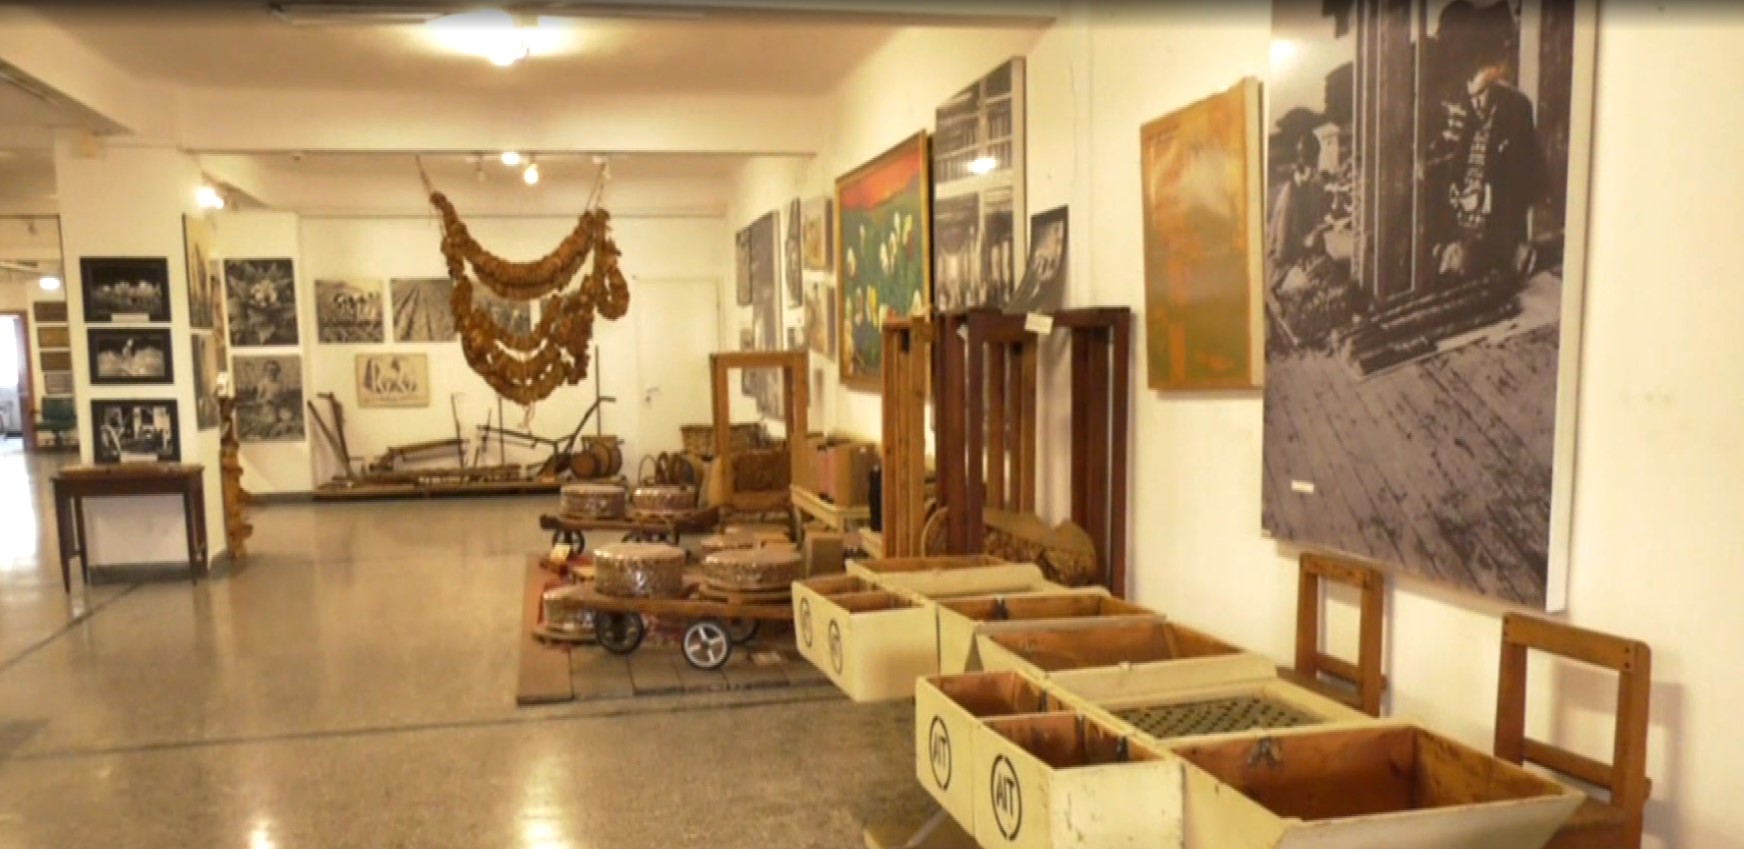 Το Μουσείο Καπνού Καβάλας συμπληρώνει 20 χρόνια λειτουργίας